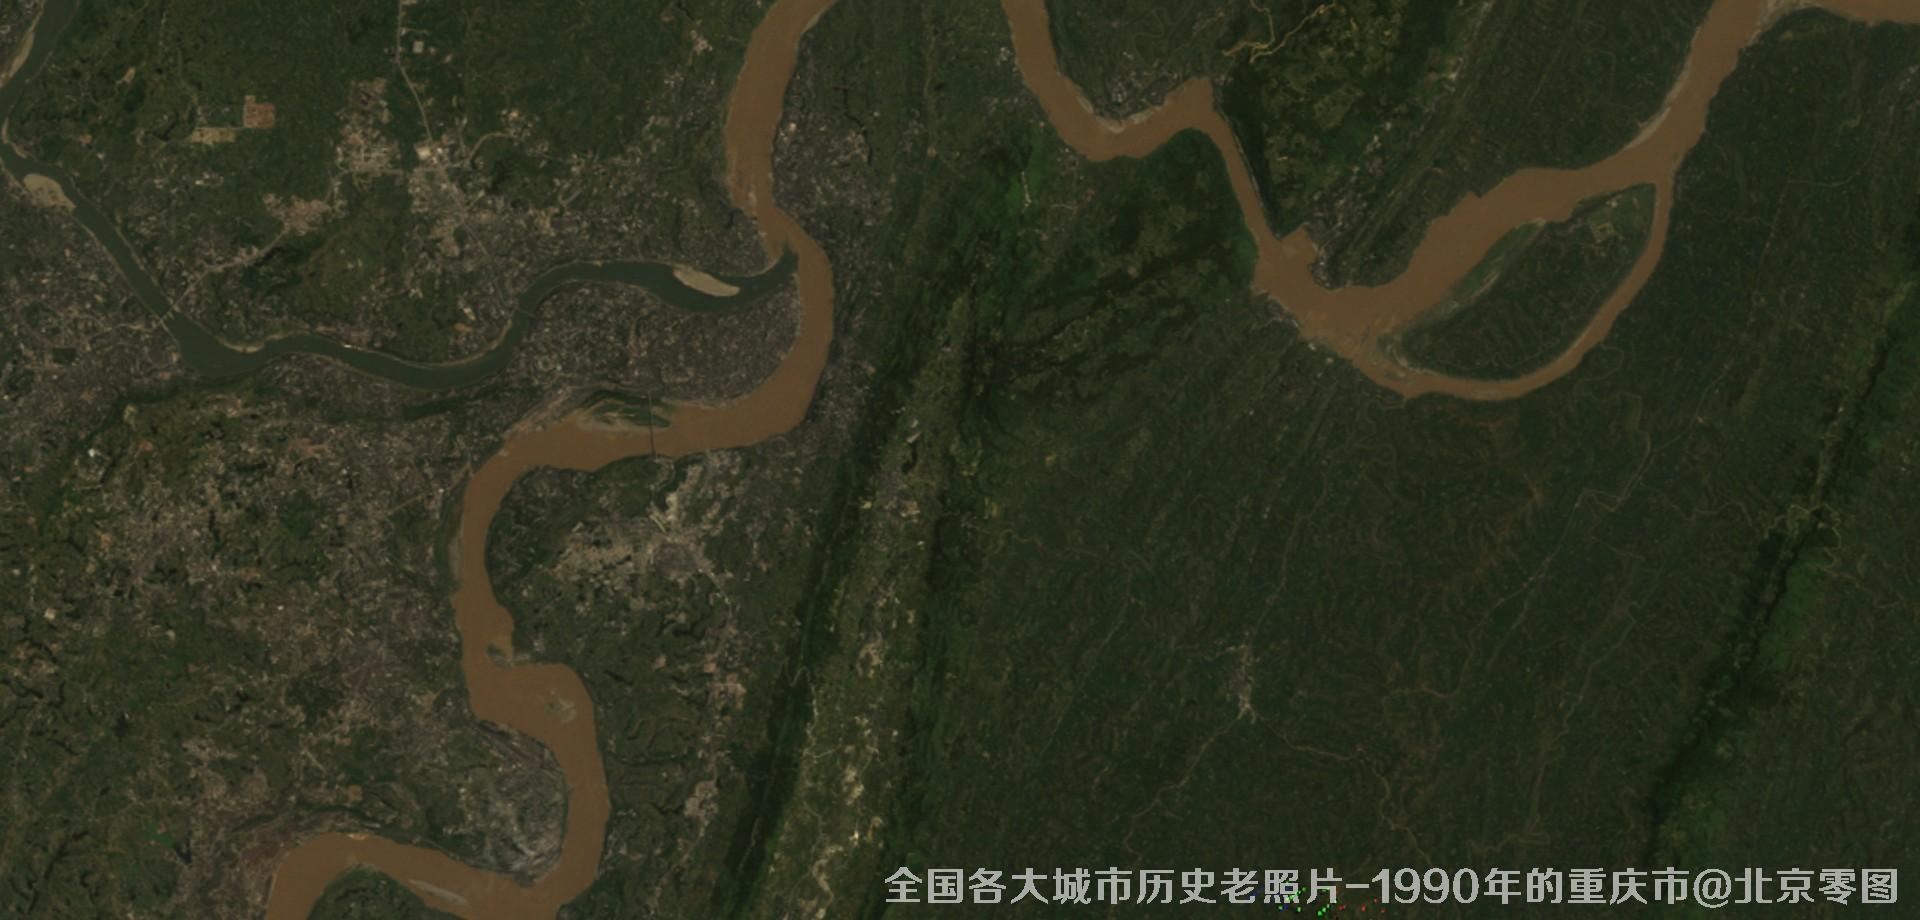 美国Landsat卫星拍摄的1990年的重庆市历史卫星影像图